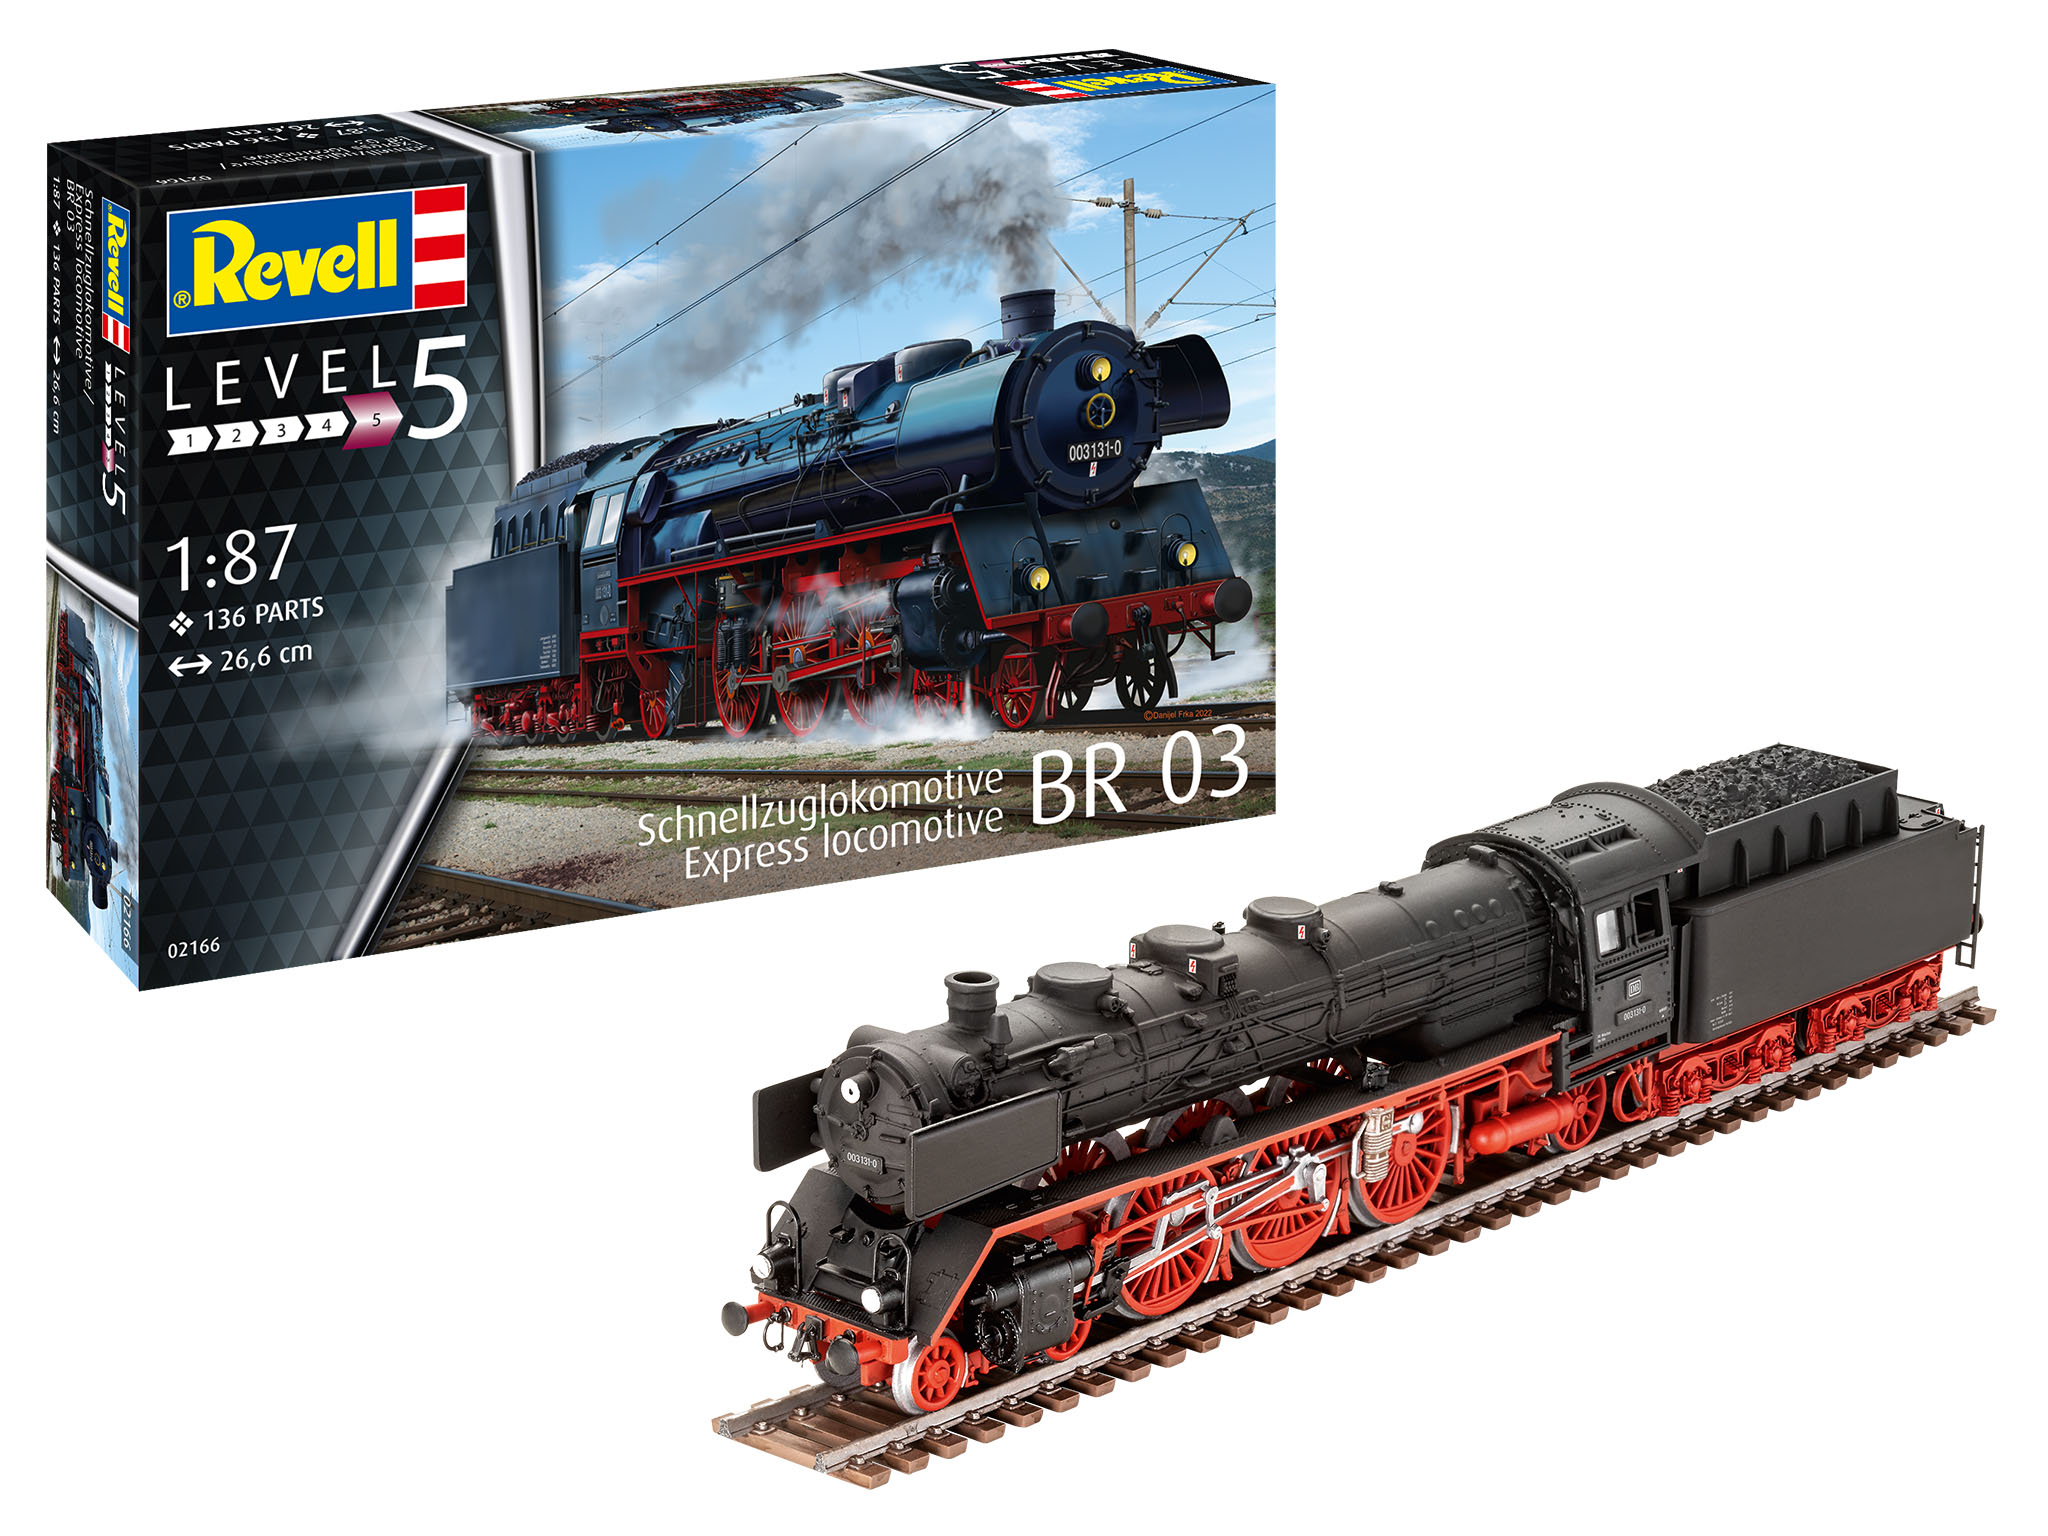 revell-02166-Schnellzuglokomotive-BR03-mit-Tender-Reichsbahn-Dampflok